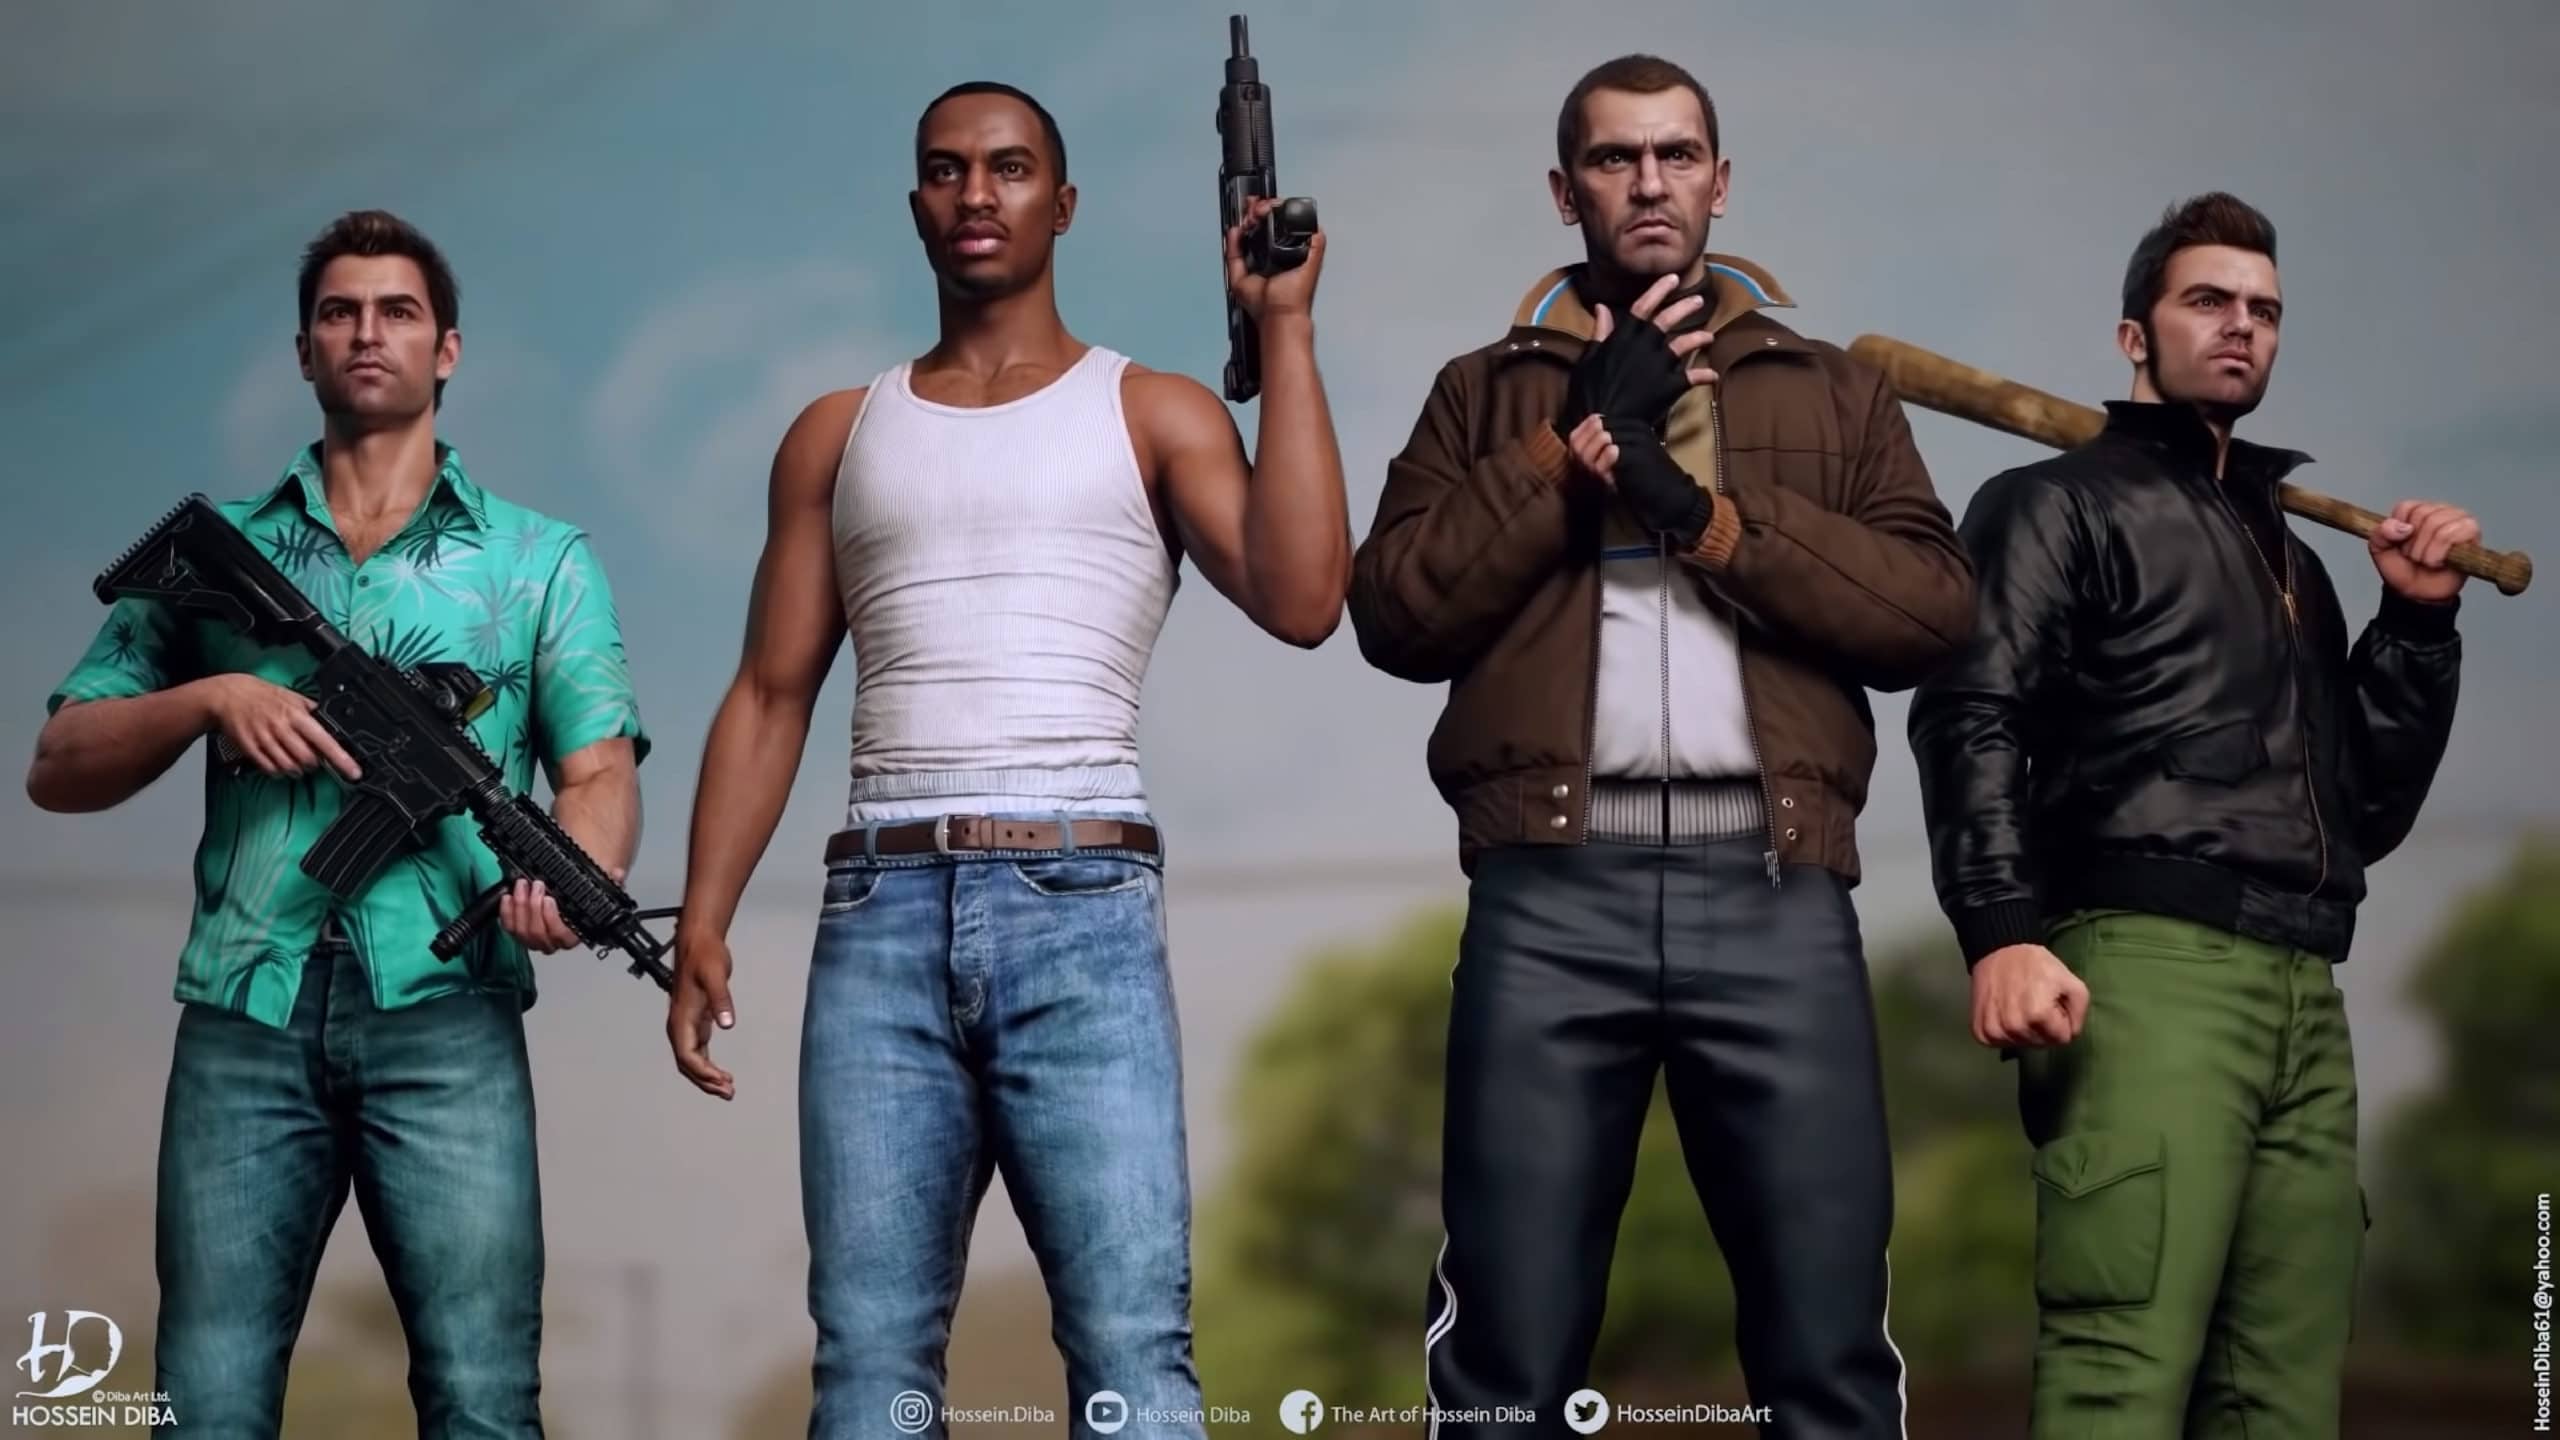 Nuevo personaje de Grand Theft Auto confirmado por el actor de voz